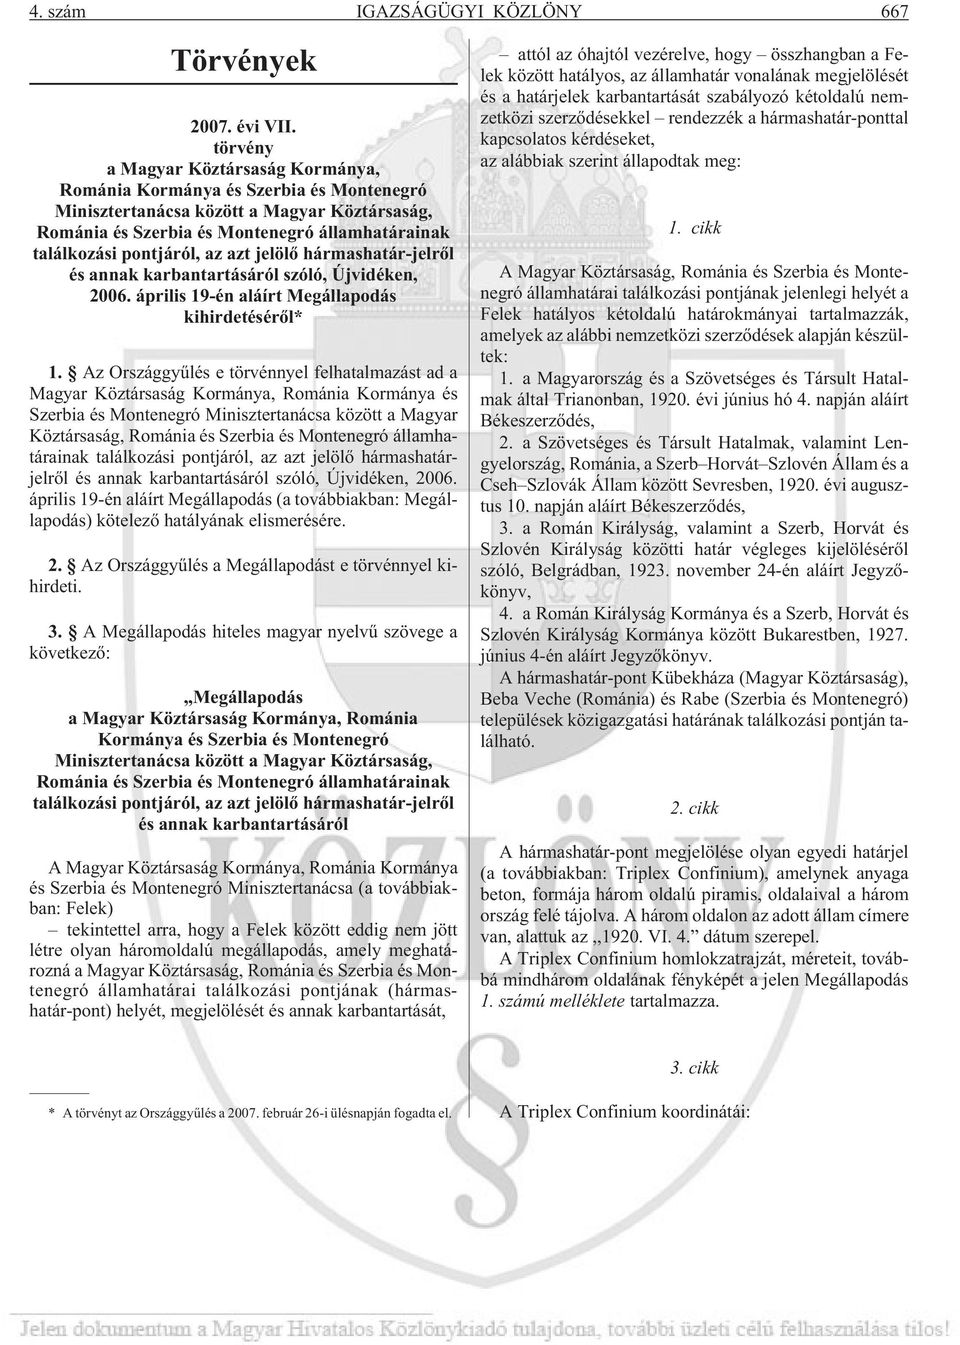 az azt jelölõ hármashatár-jelrõl és annak karbantartásáról szóló, Újvidéken, 2006. április 19-én aláírt Megállapodás kihirdetésérõl* 1.